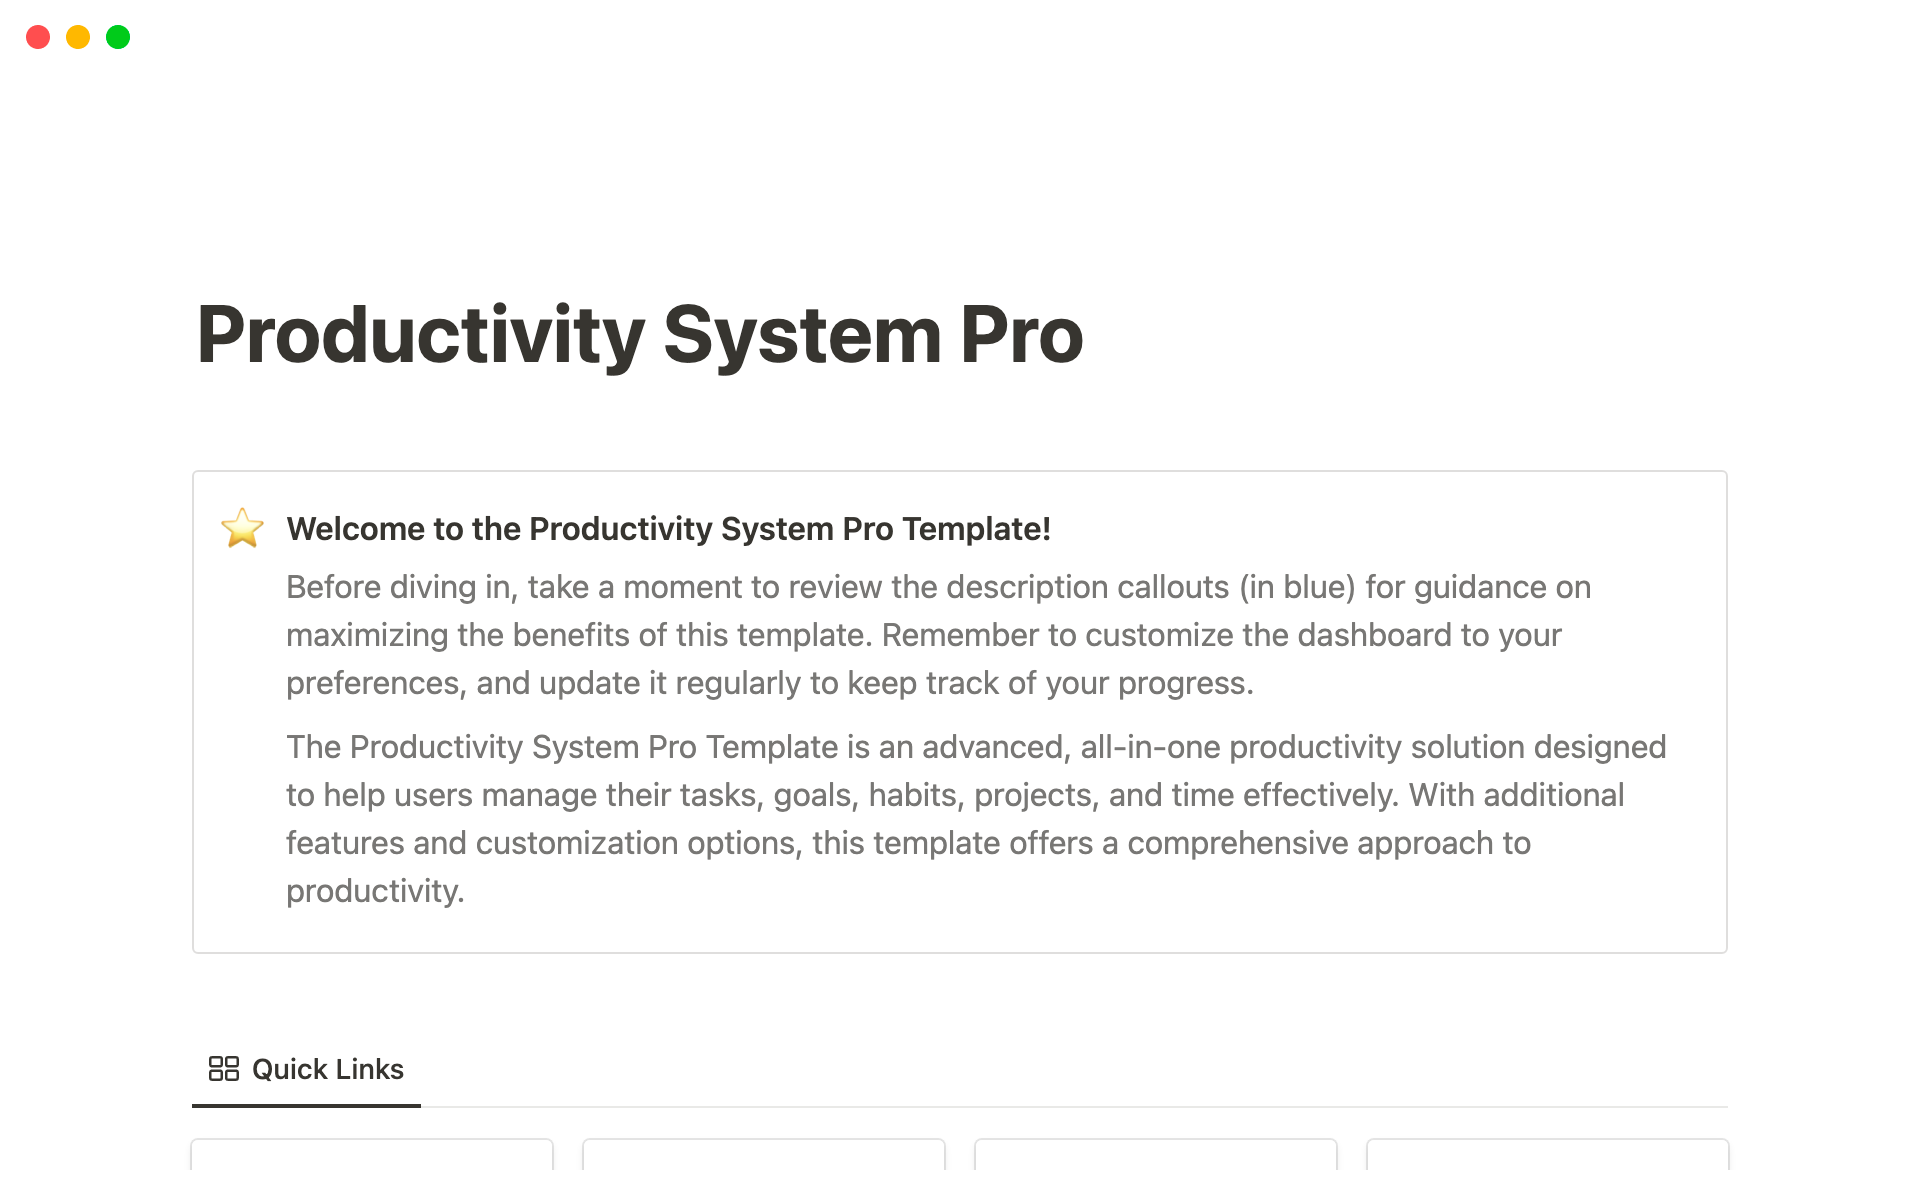 Vista previa de plantilla para Productivity System Pro